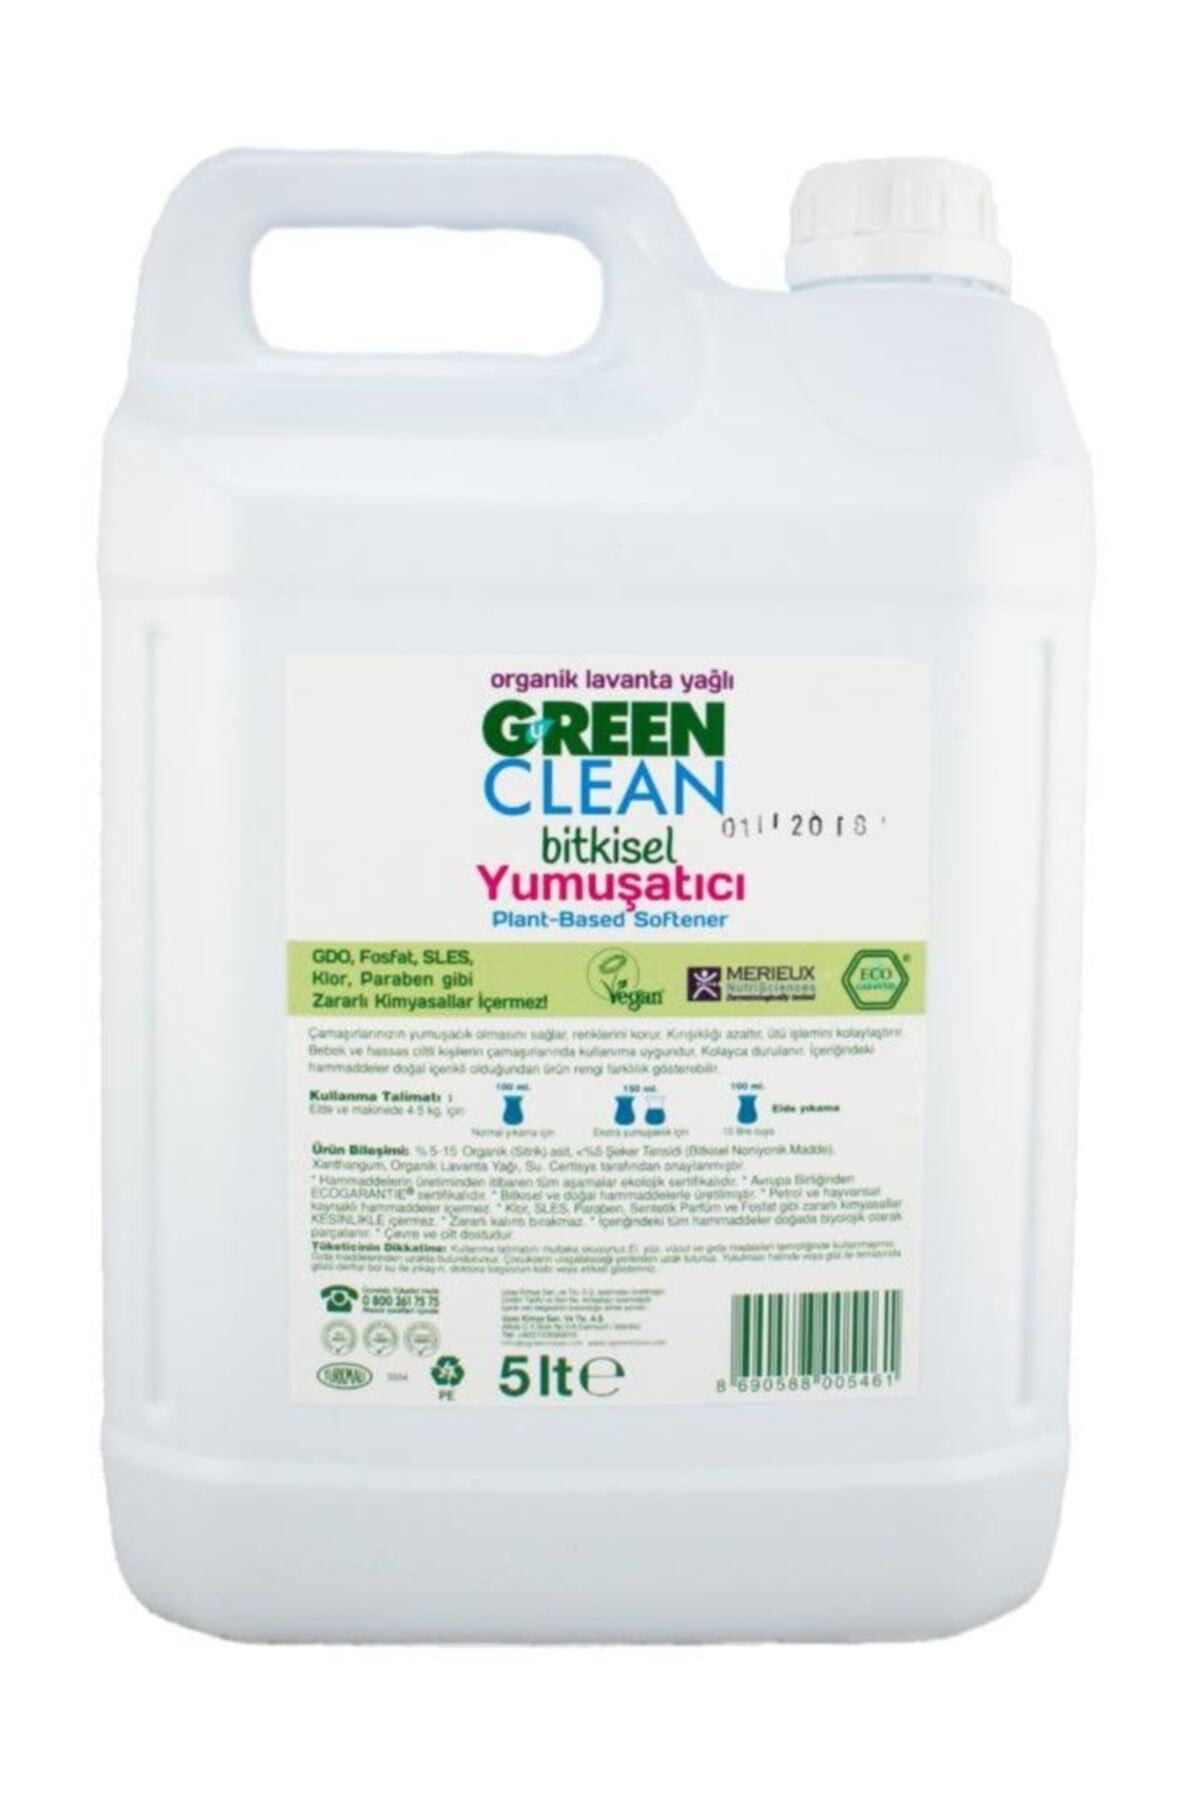 Green Clean Organik Lavanta Yağlı Bitkisel Çamaşır Yumuşatıcı 5000 ml